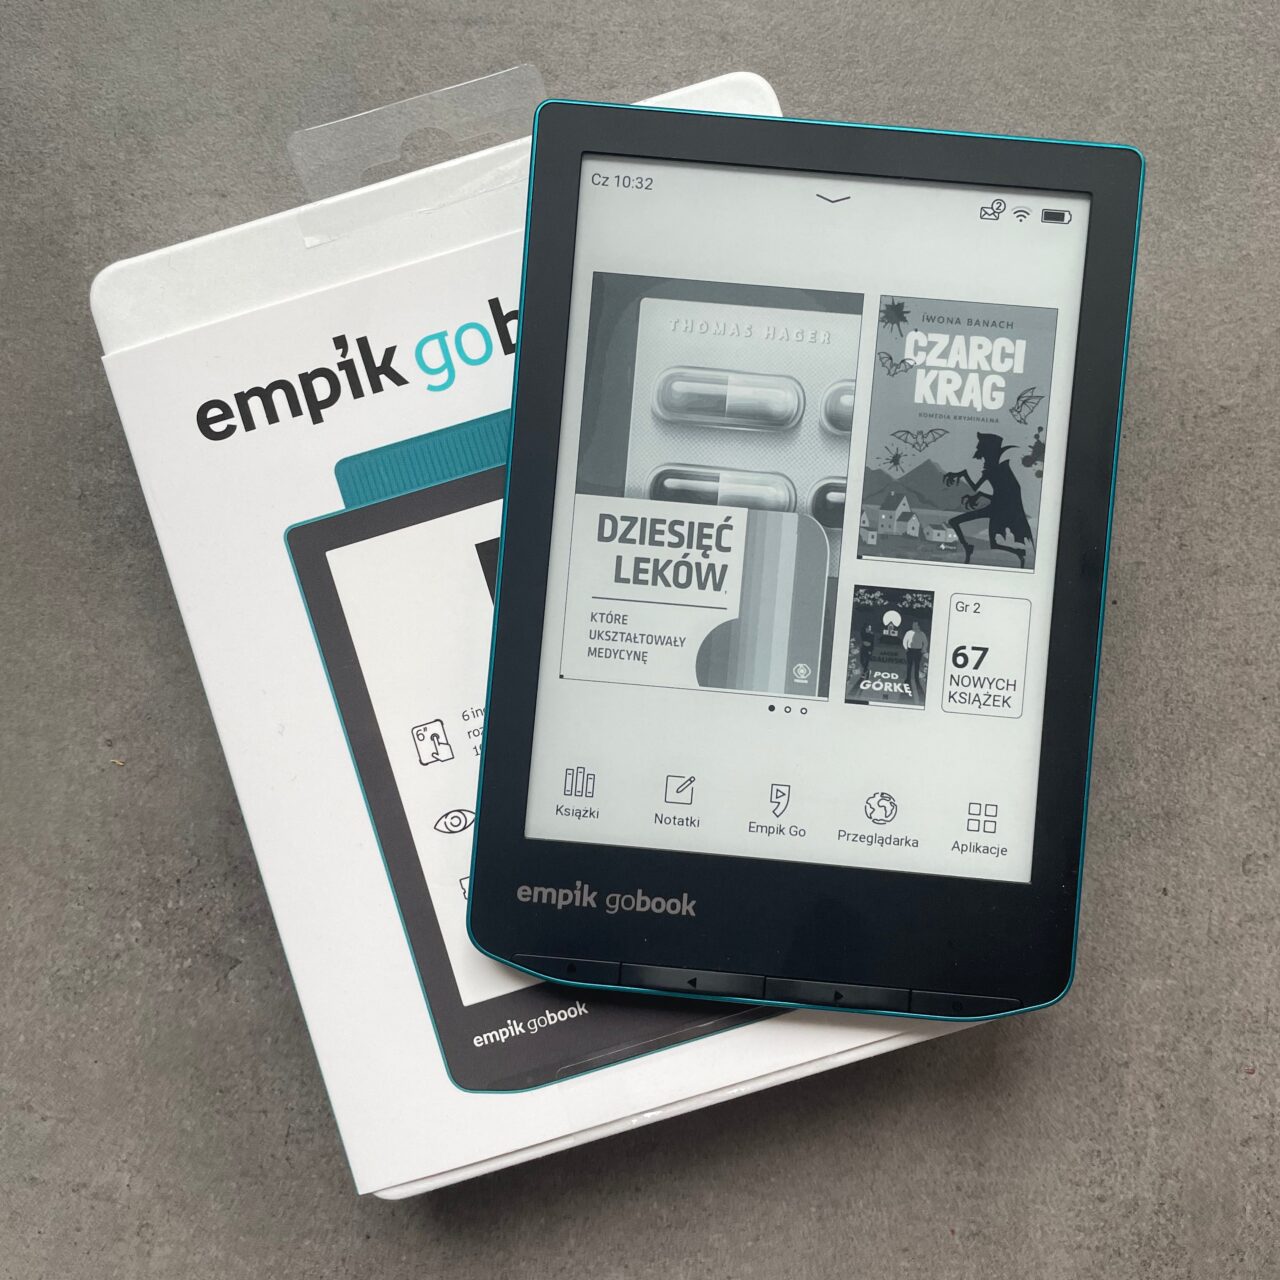 Czytnik e-booków Empik GoBook na pudle, z włączonym ekranem wyświetlającym interfejs z okładkami książek, leżący na szarym tle.